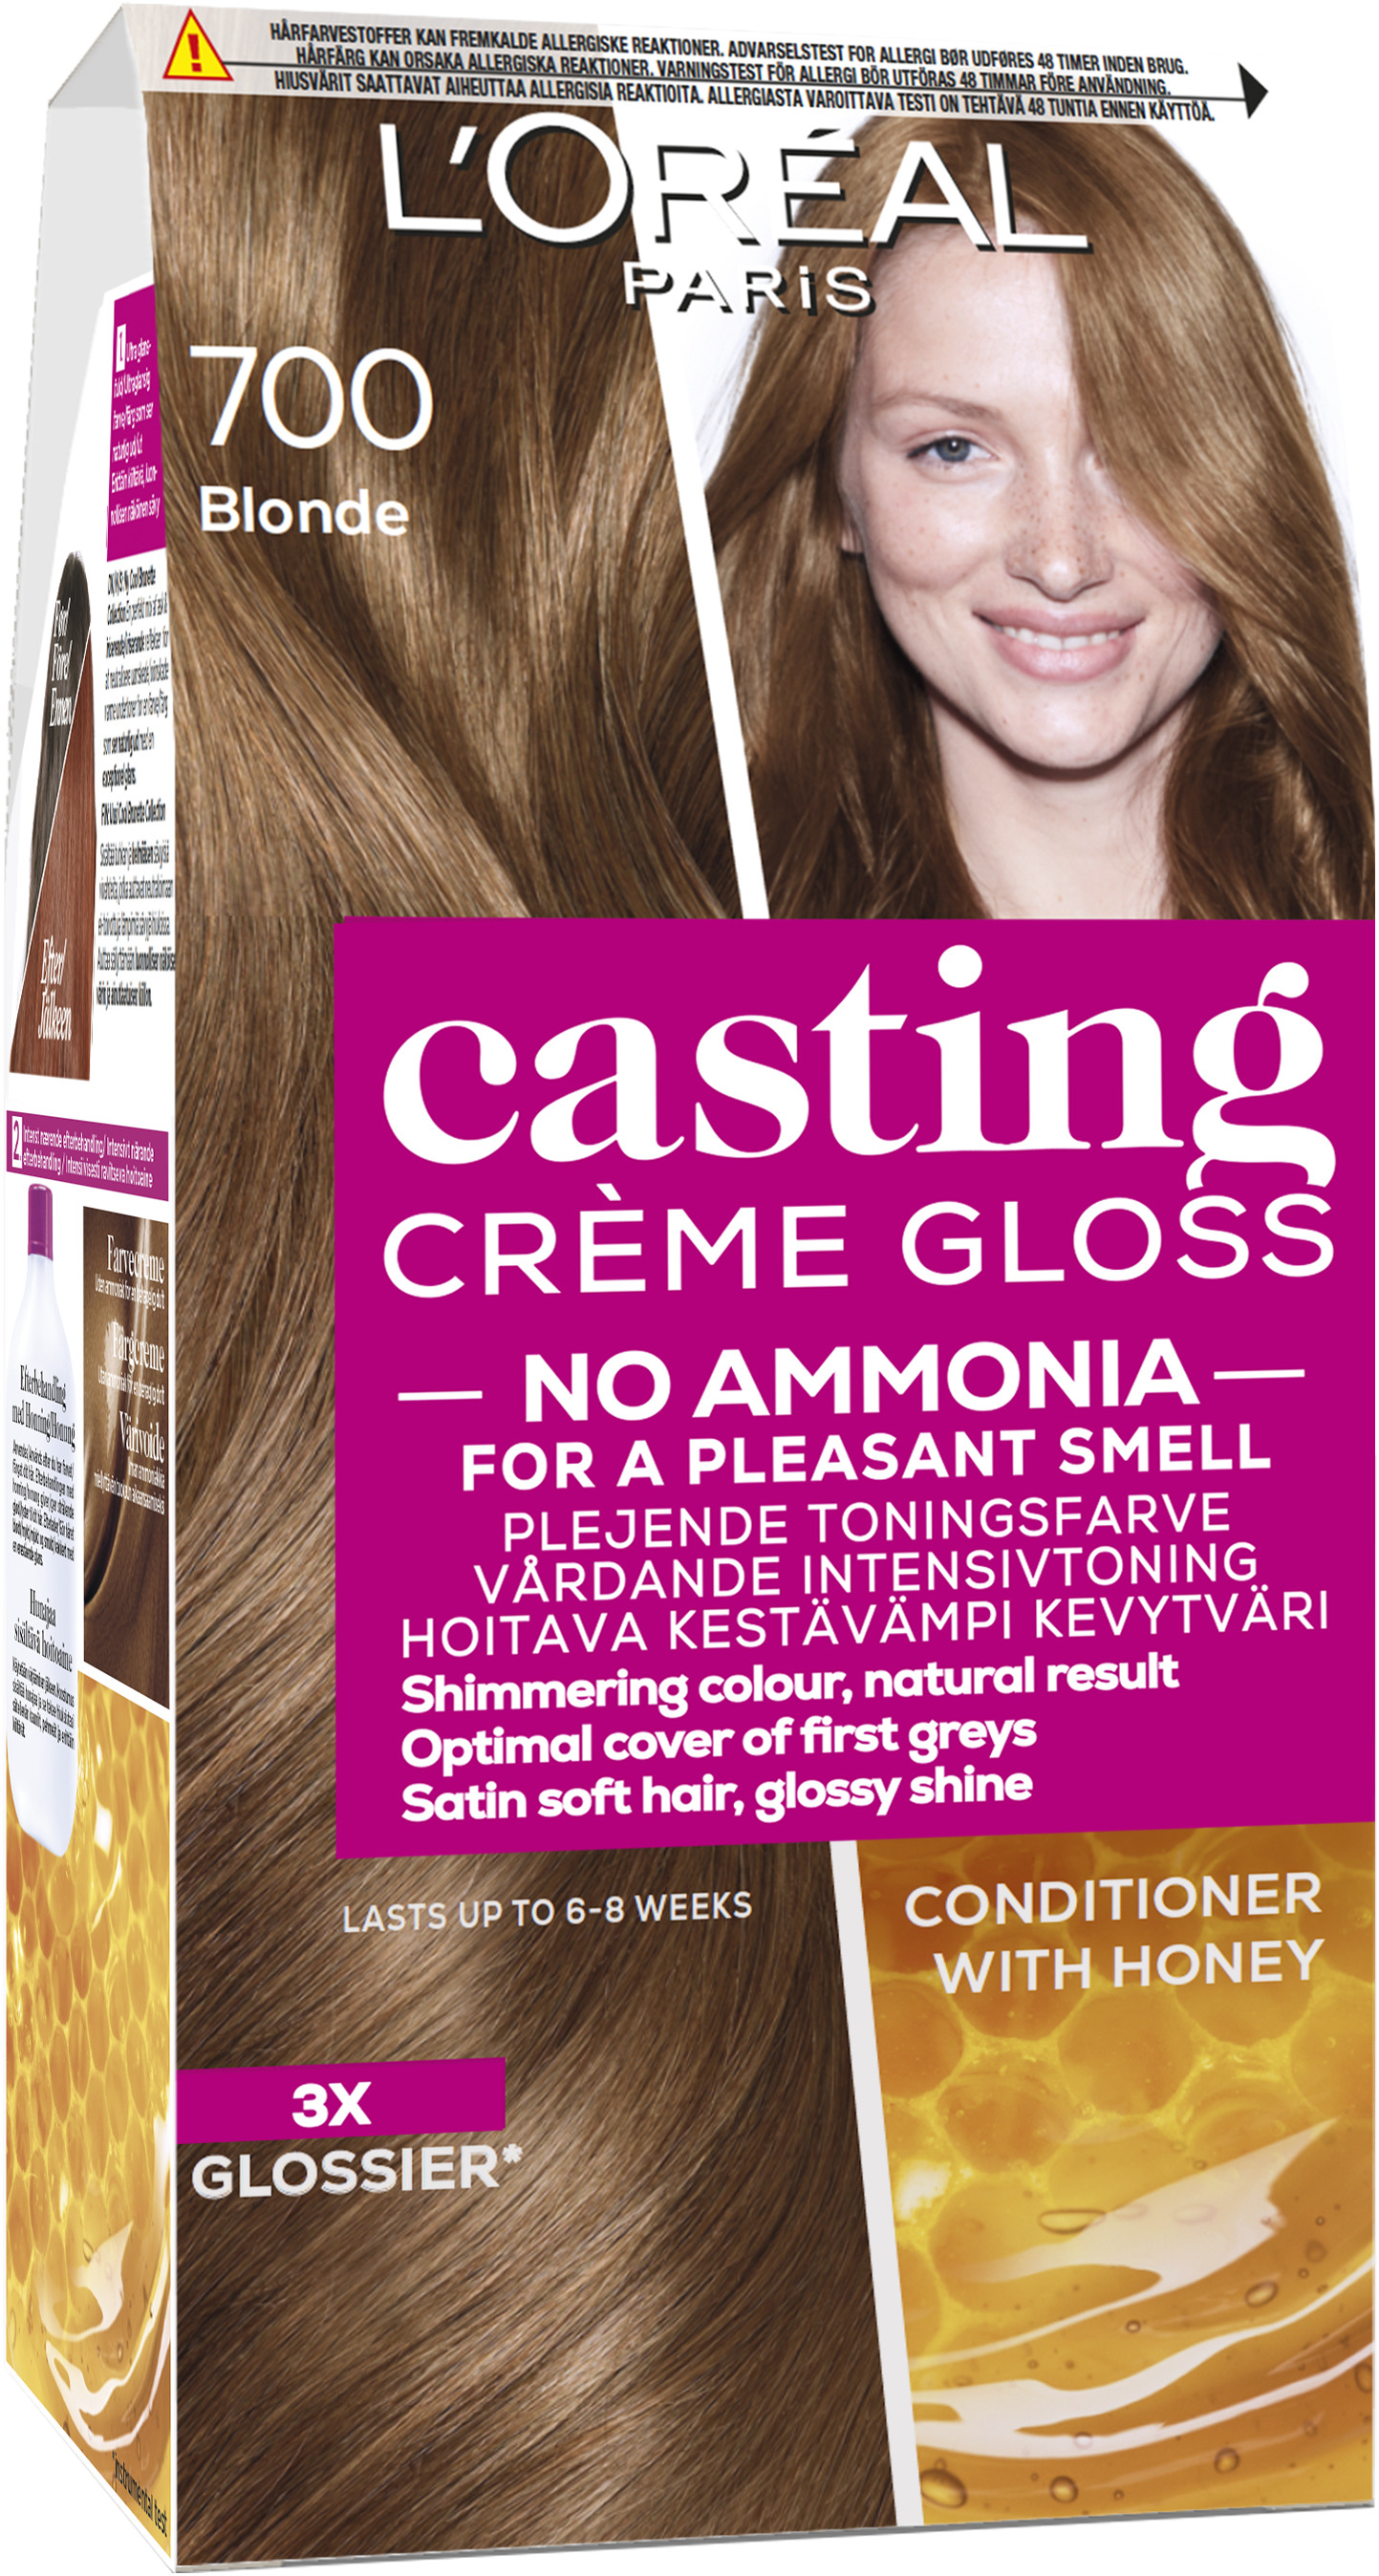 L'Oréal Casting Creme Gloss 700 Blonde